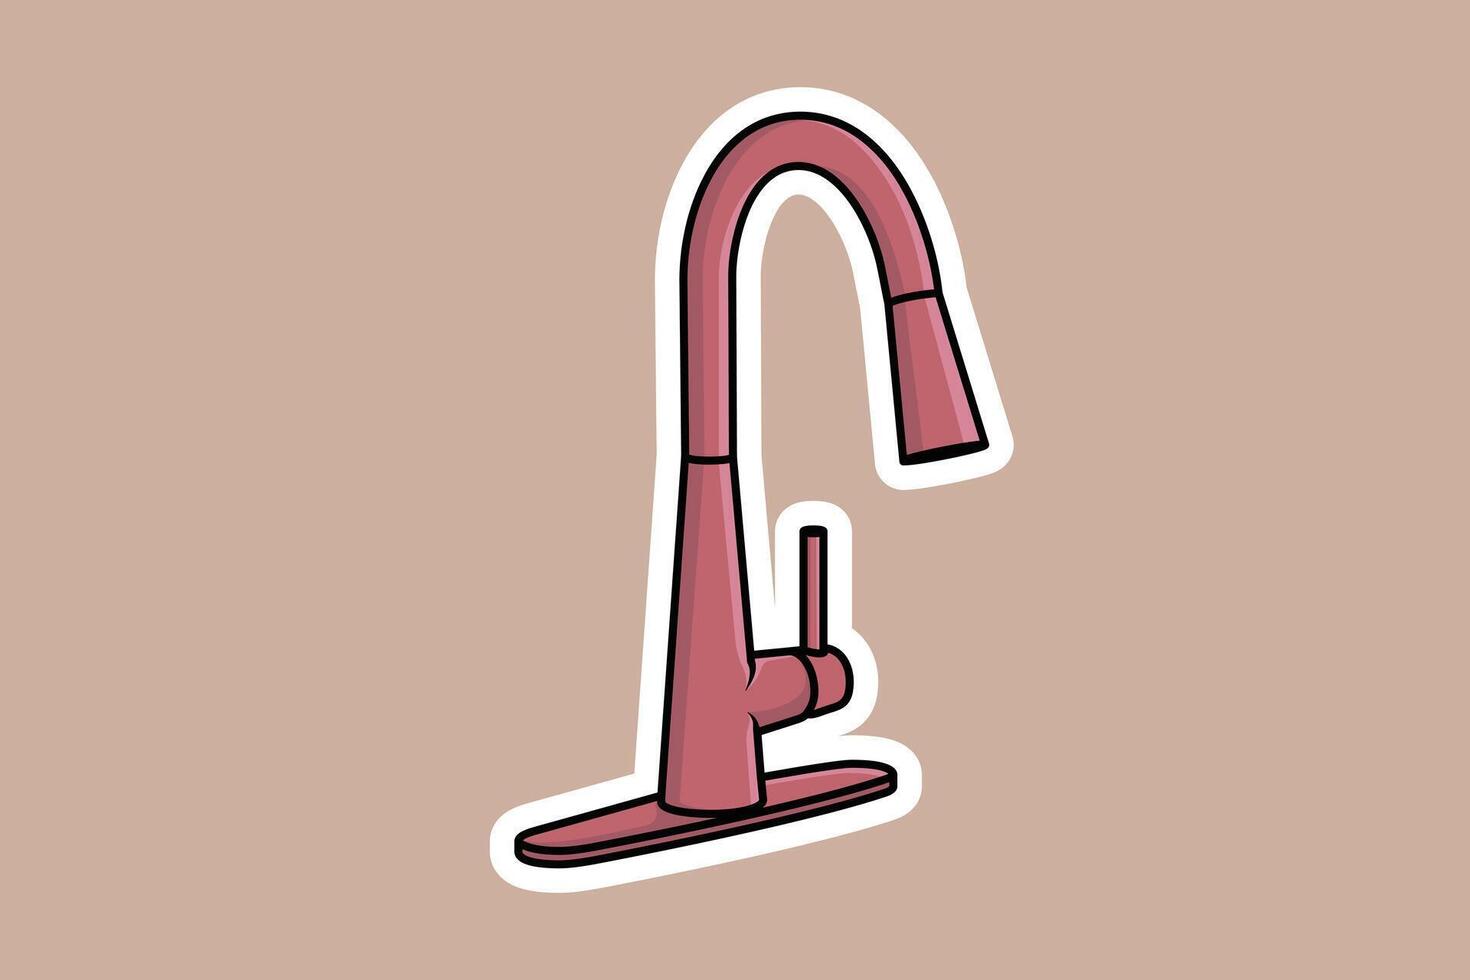 Stahl Wasser liefern Wasserhähne zum Badezimmer und Küche sinken Aufkleber Vektor Illustration. Zuhause Innere Objekte Symbol Konzept. Küche Wasserhahn Aufkleber Design Logo mit Schatten.